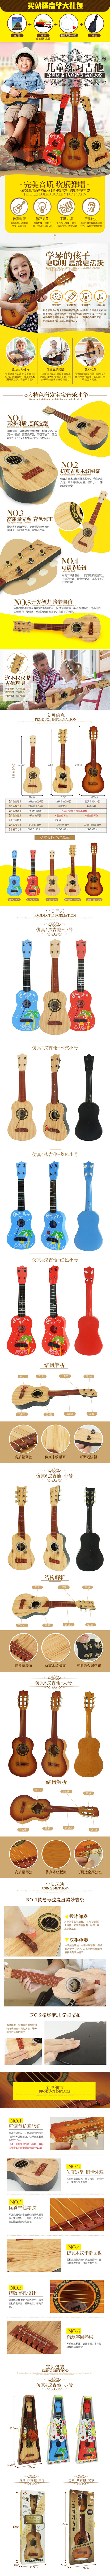 吉他玩具详情页 母婴玩具详情页设计